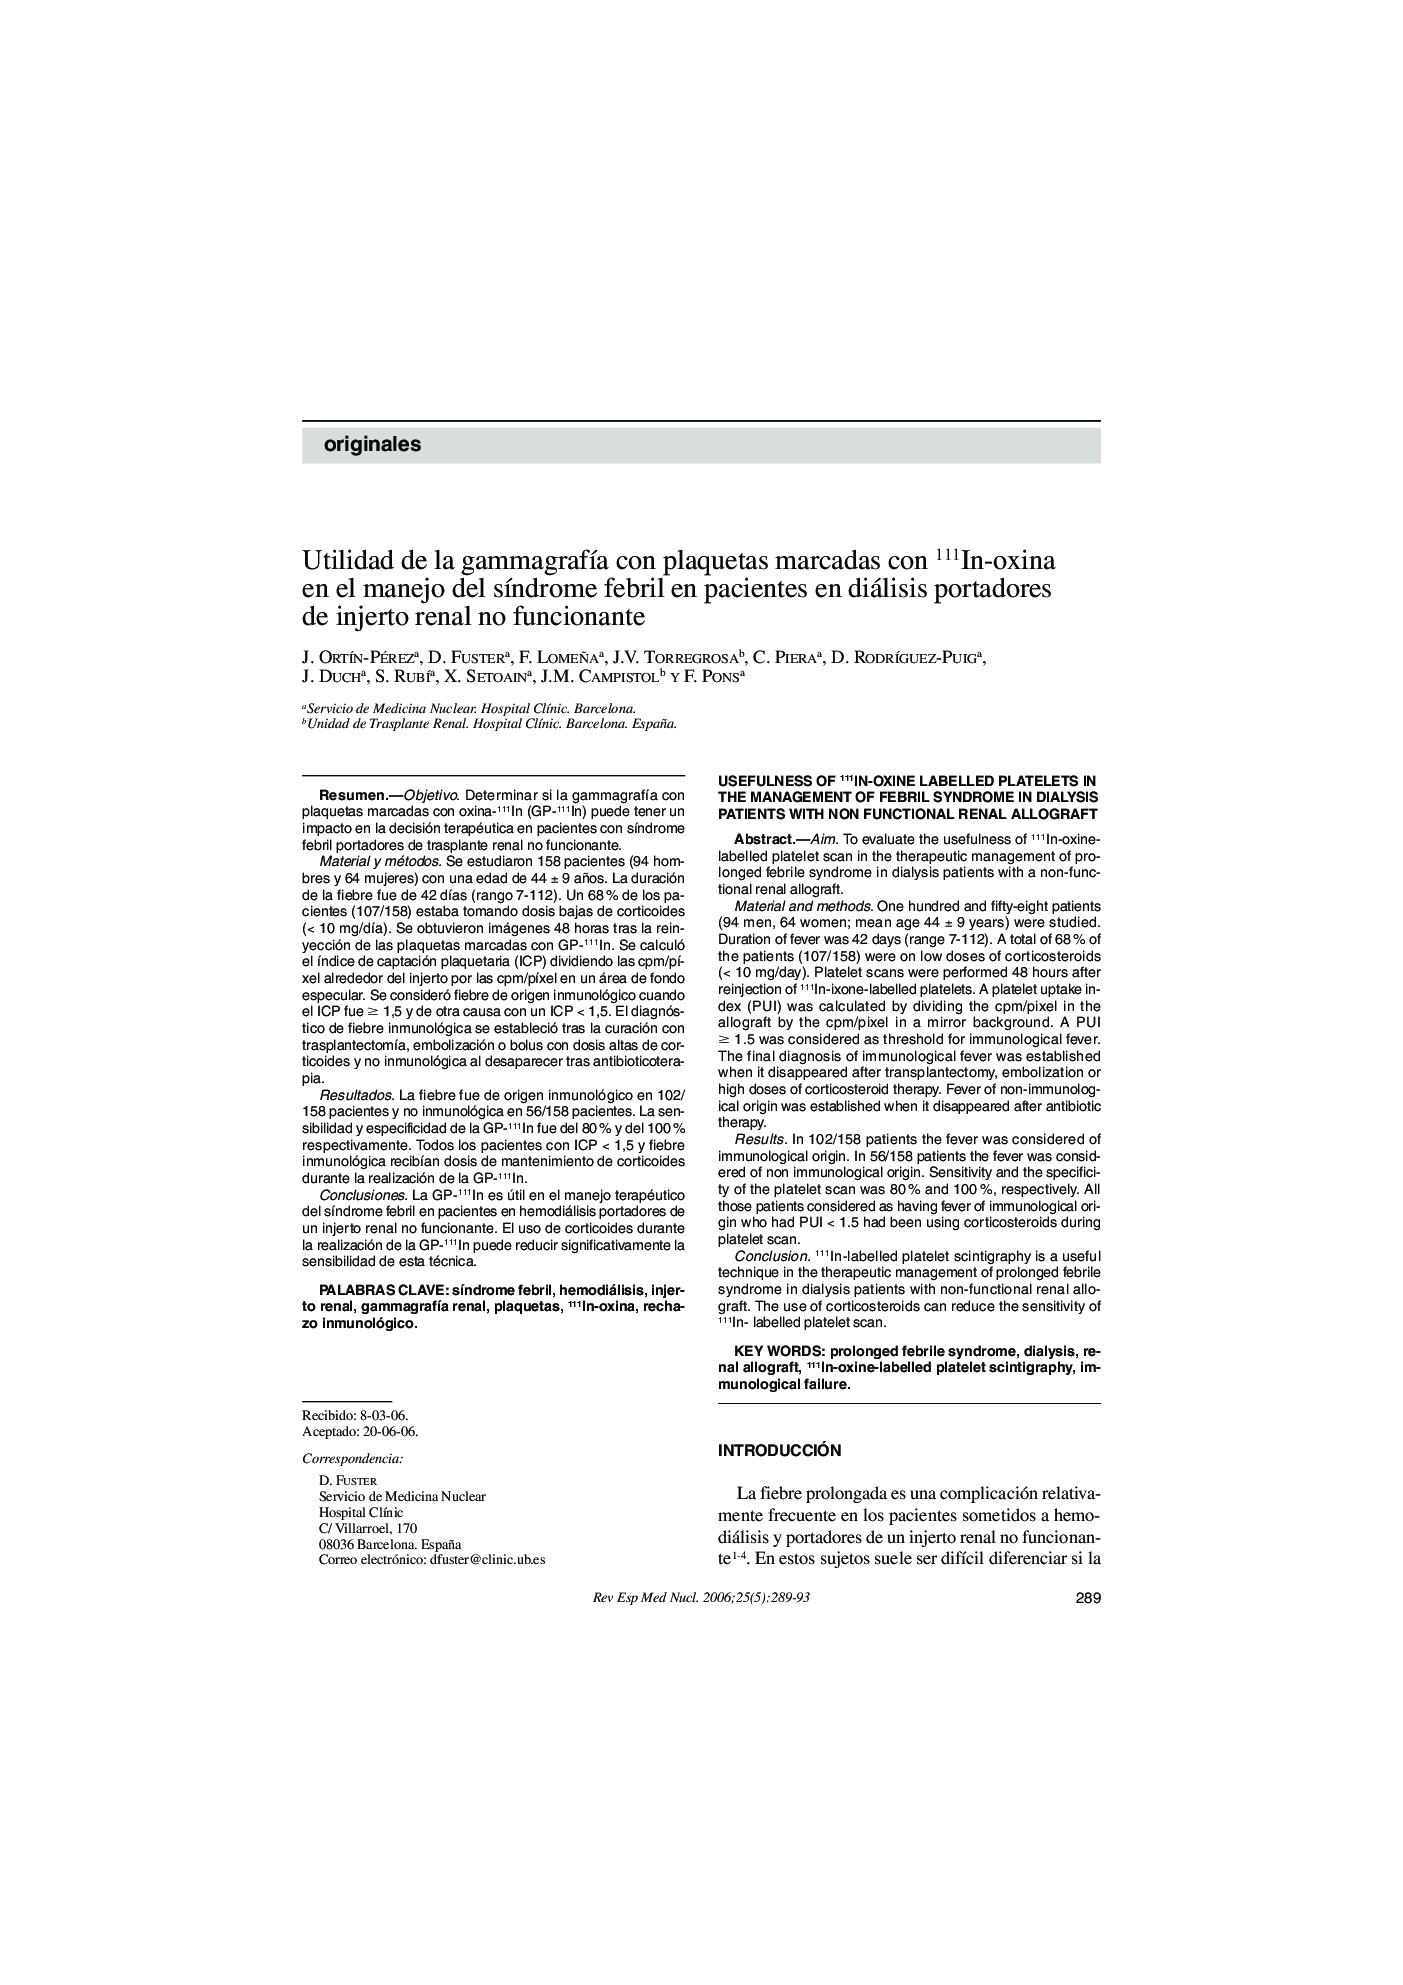 Utilidad de la gammagrafÃ­a con plaquetas marcadas con 111In-oxina en el manejo del sÃ­ndrome febril en pacientes en diálisis portadores de injerto renal no funcionante